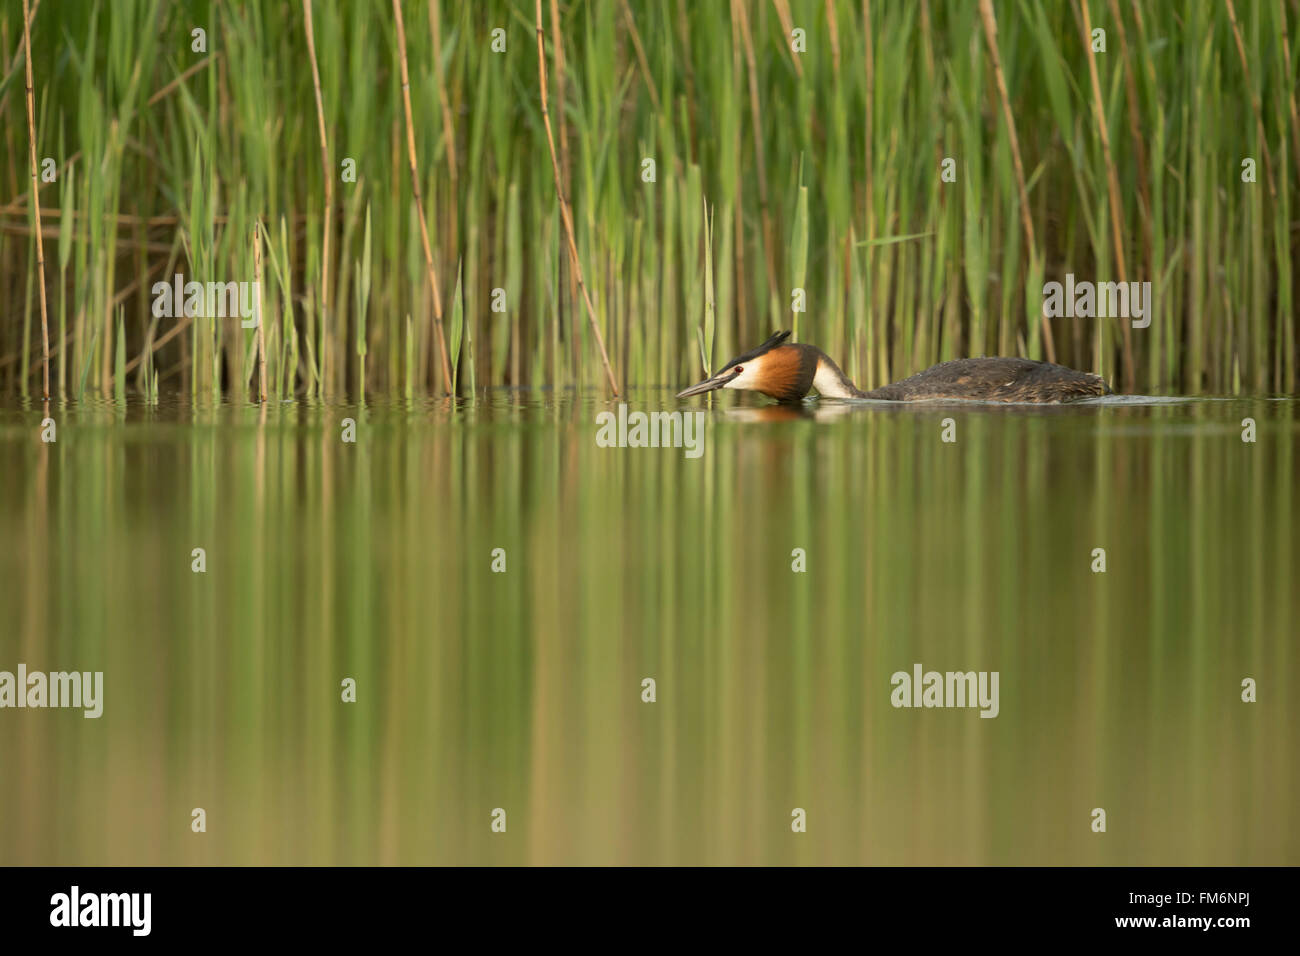 Svasso maggiore (Podiceps cristatus ) nuota in assetto disteso lungo un verde nastro a lamelle, acque calme, bella riflessioni. Foto Stock